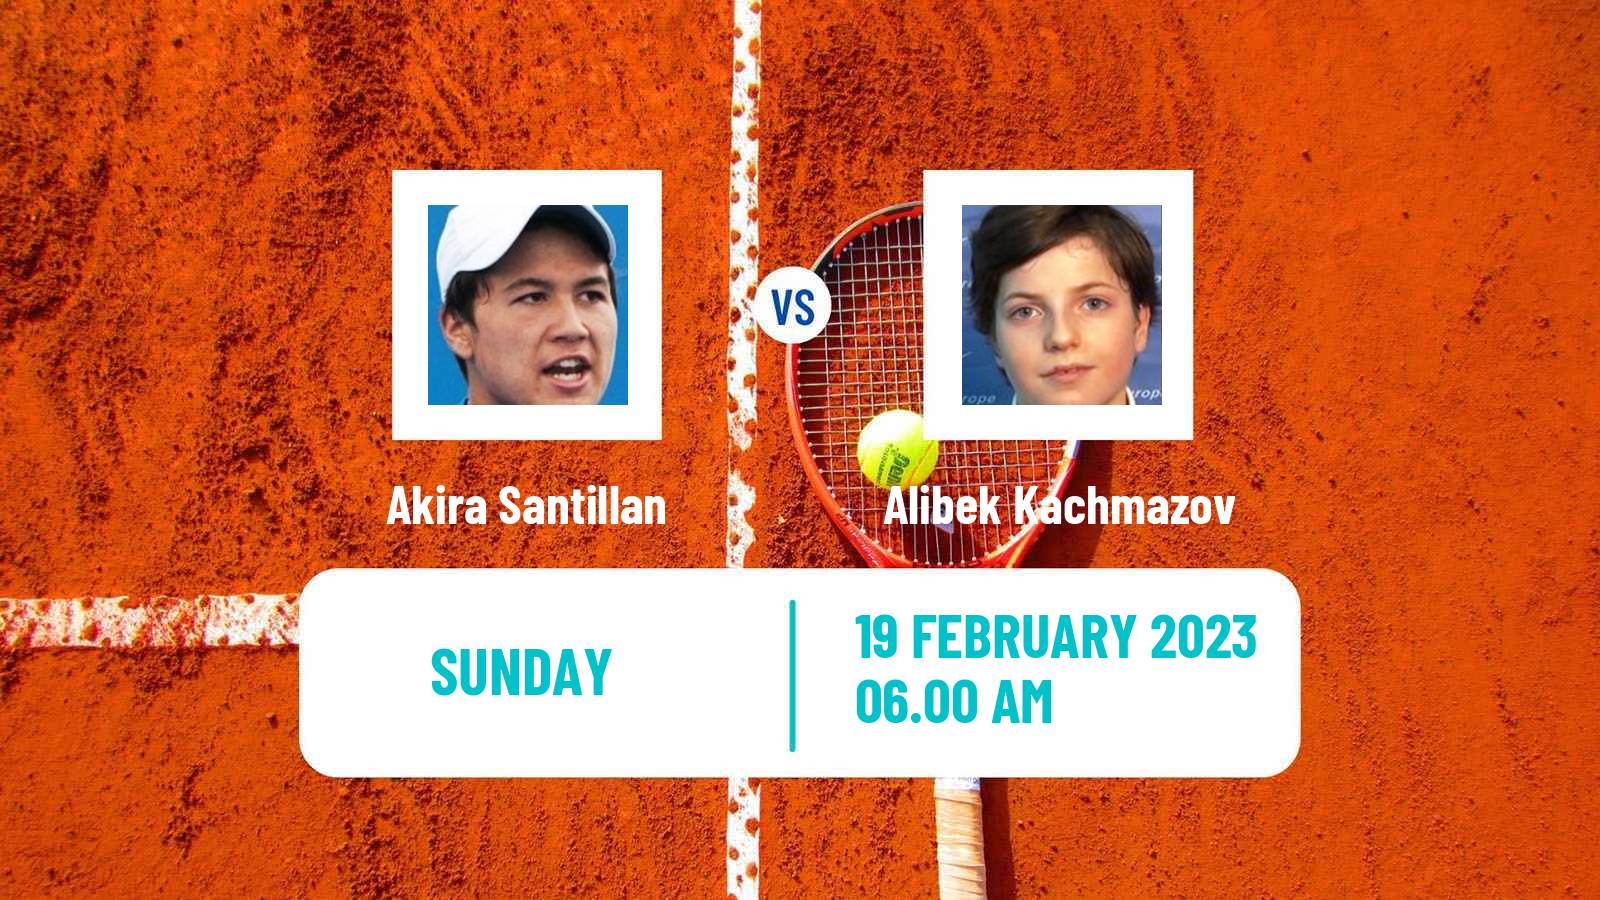 Tennis ATP Challenger Akira Santillan - Alibek Kachmazov